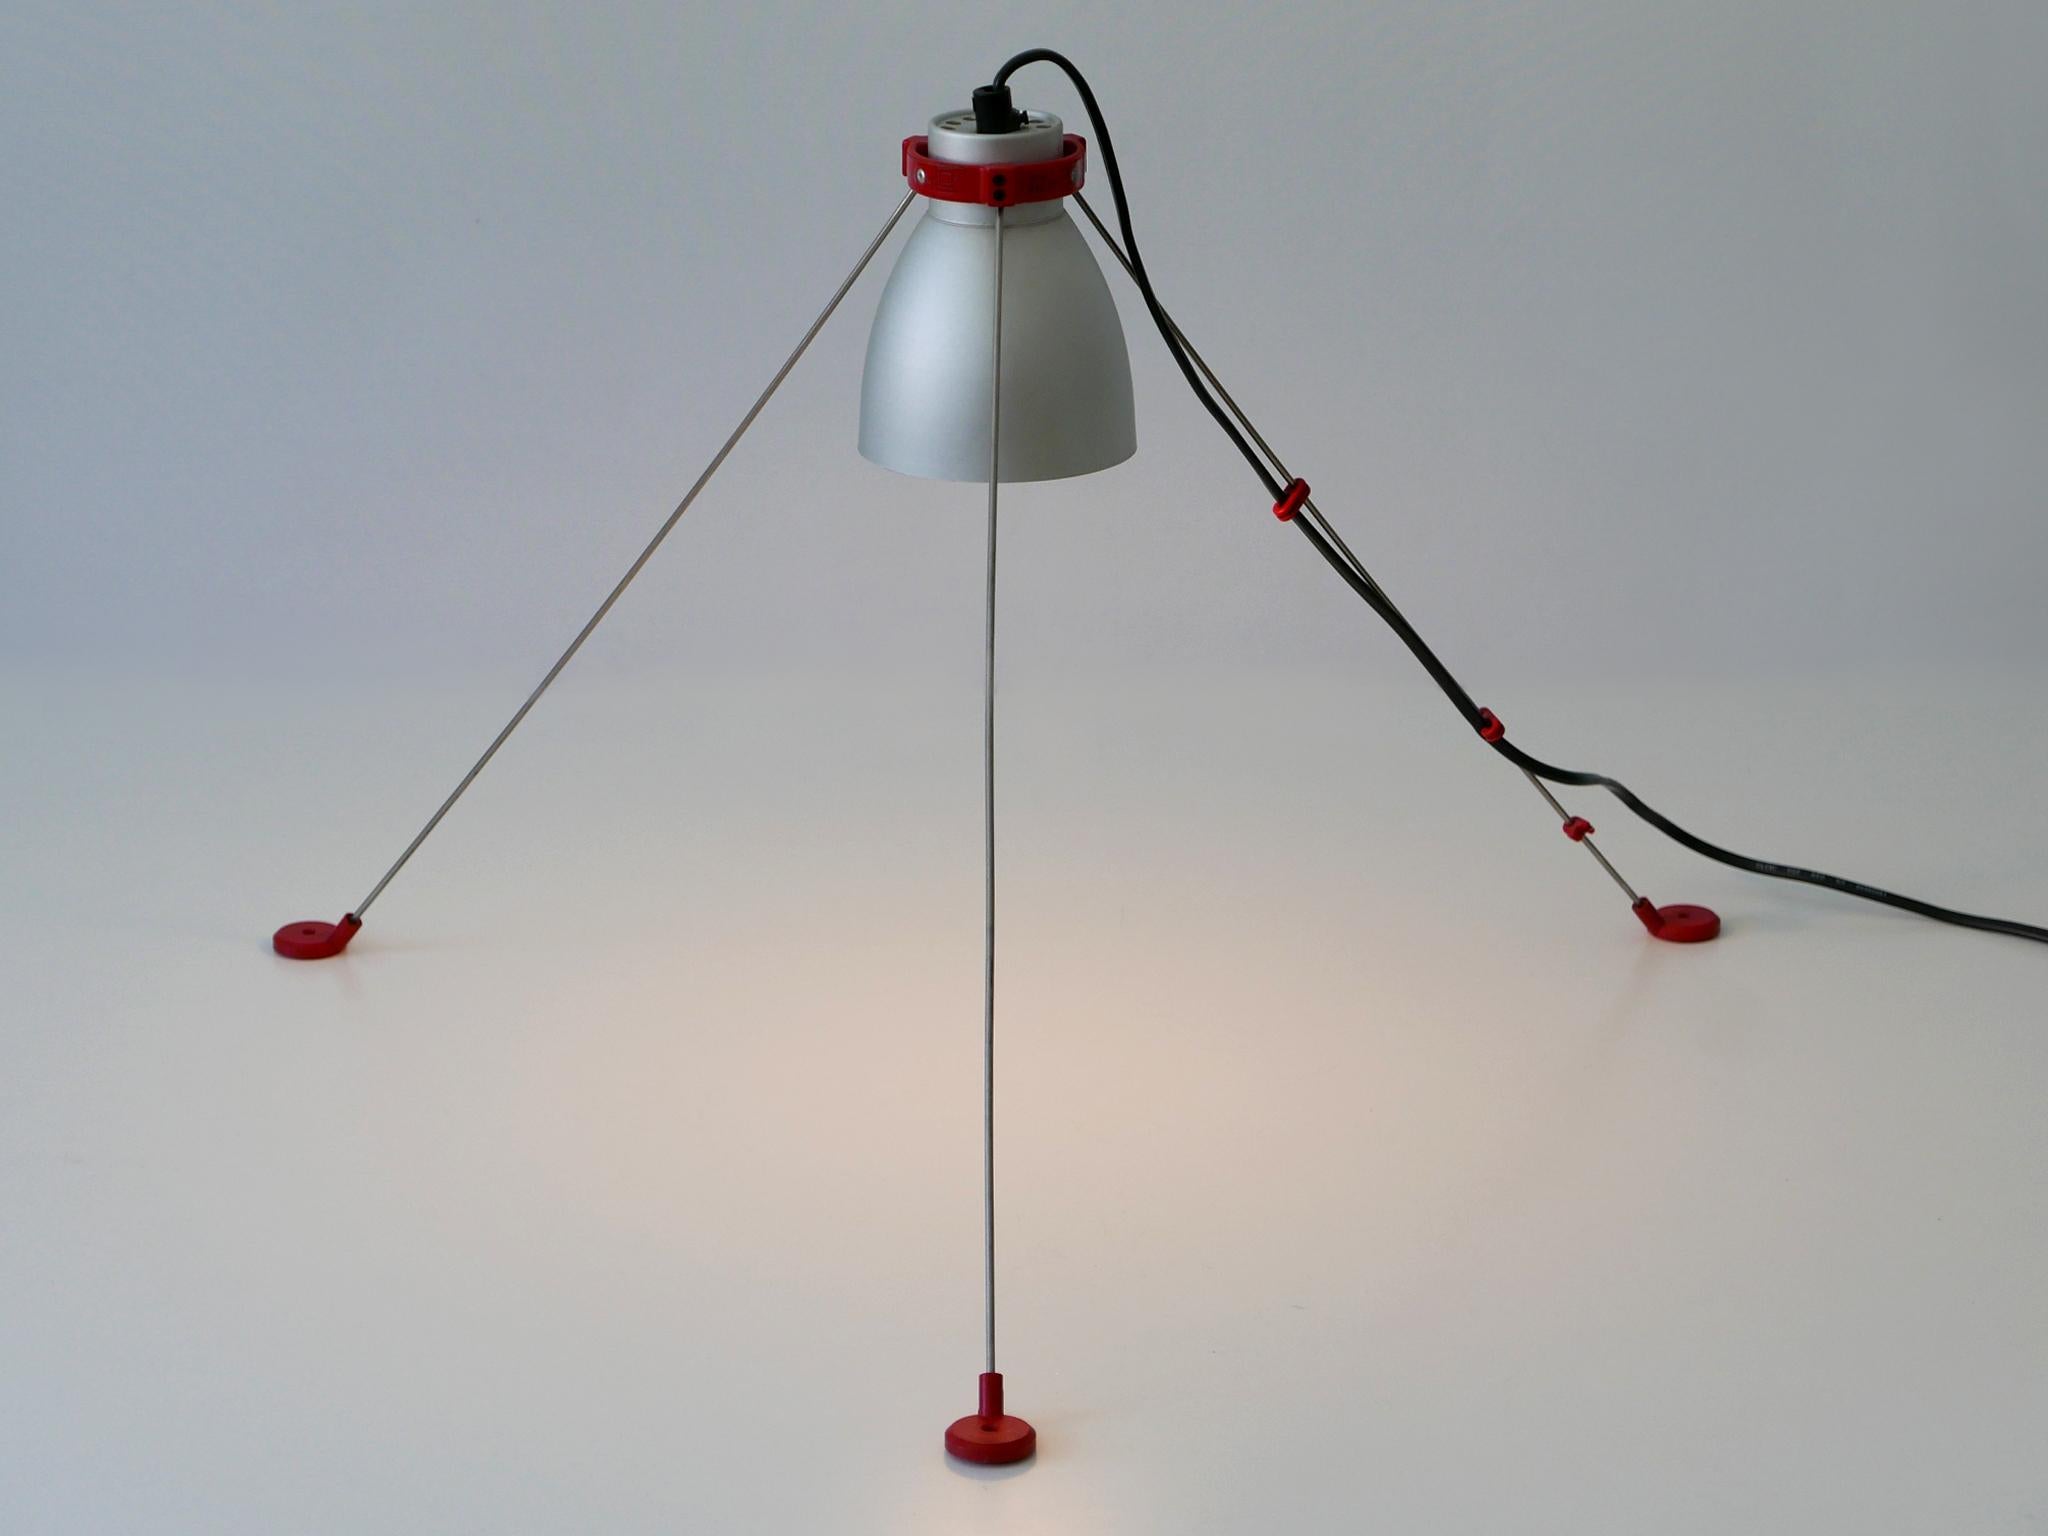 Lampe de table / de sol / murale ou de plafond 'Grifo' extrêmement rare et multifonctionnelle. Conçu par G.H. Tew pour Artemide, Italie, années 1980.

Réalisée en aluminium, métal et plastique, la lampe de table est livrée avec 1 douille à vis E27